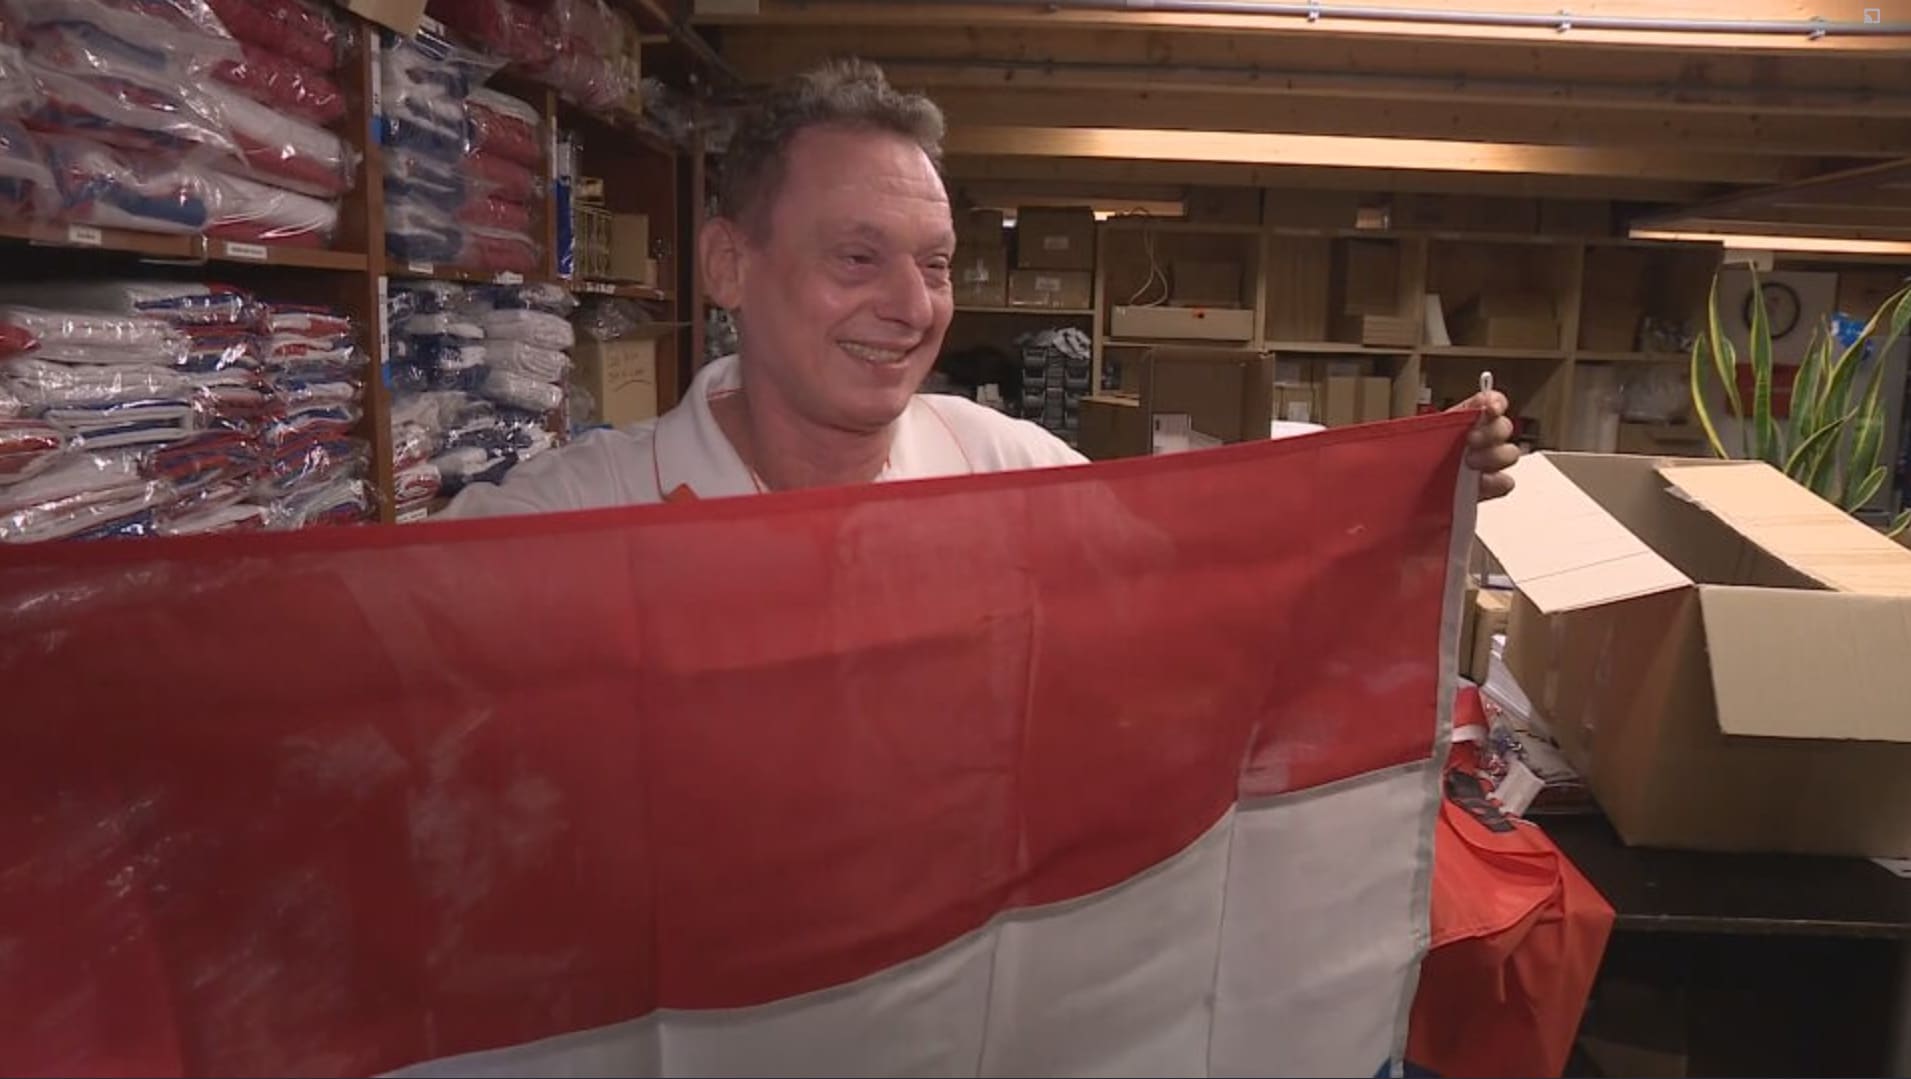 Vlaggenverkoper Marco boert goed door protest met omgekeerde vlaggen